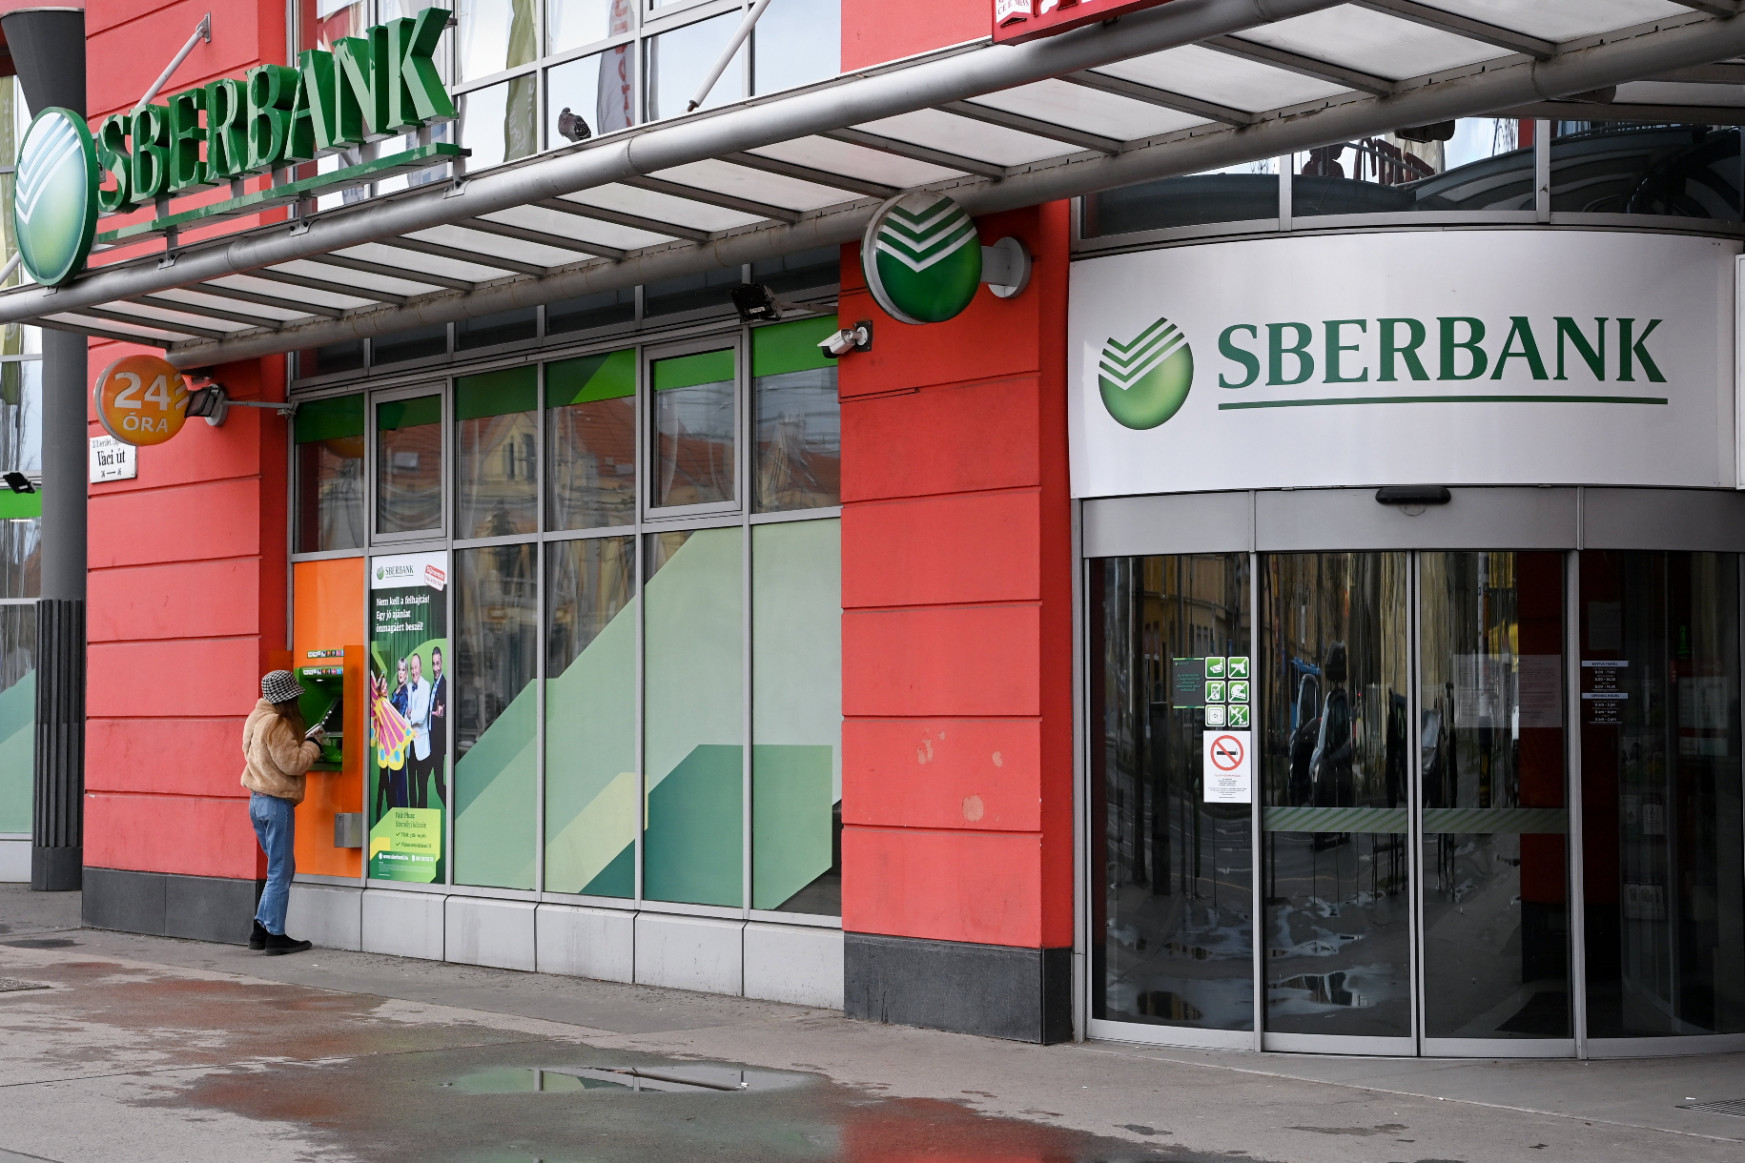 Pillanatok alatt történt minden, menthetetlen volt a Sberbank